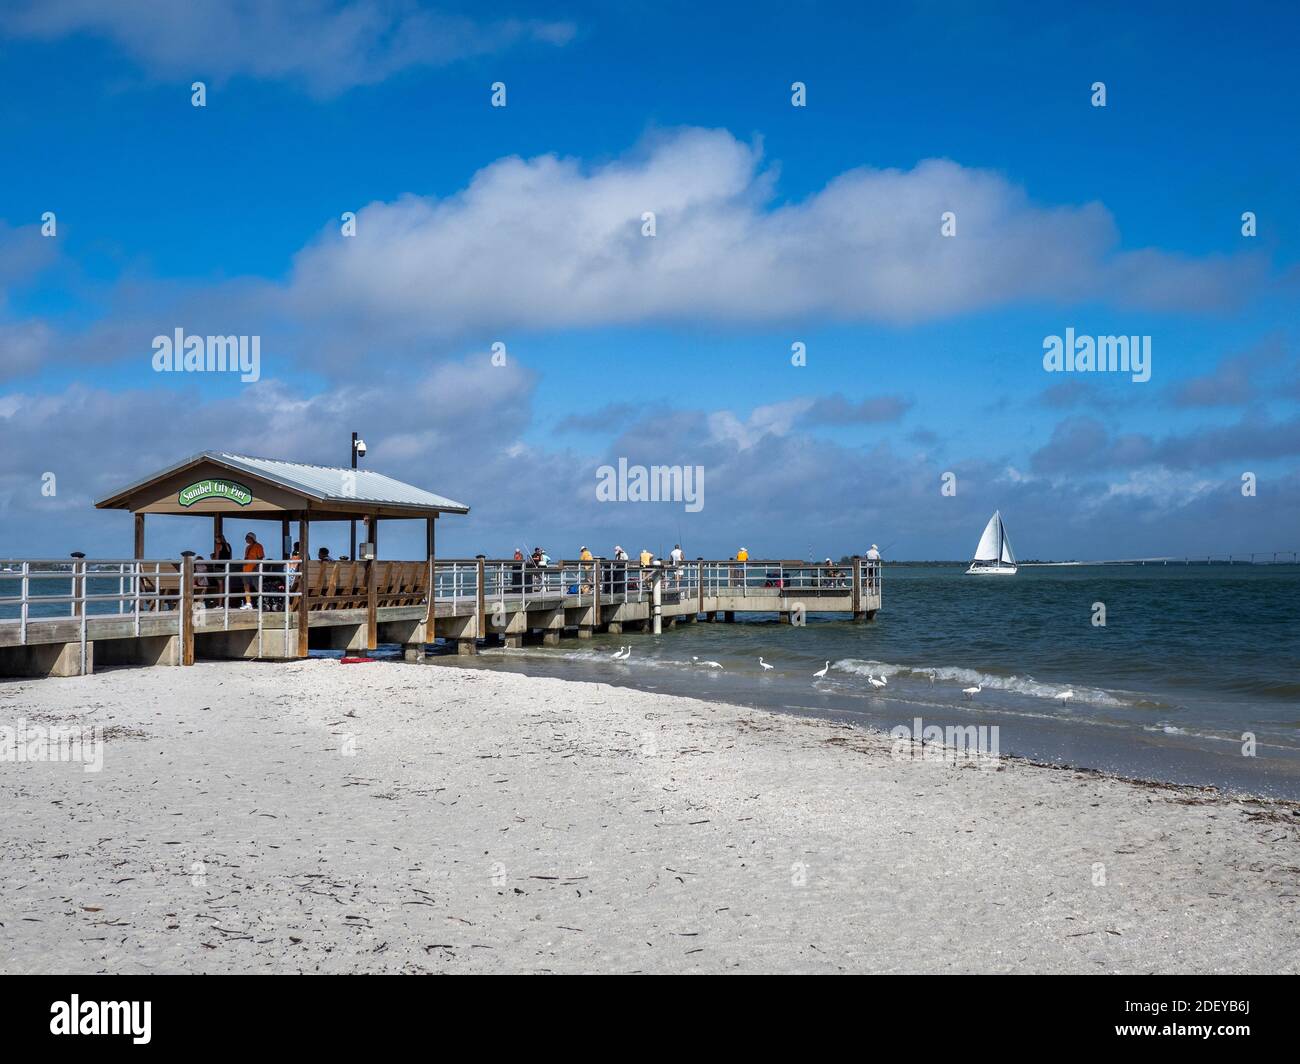 El muelle de pesca de Sanibel Island en Sanibel Island Costa del Golfo de Florida ion los Estados Unidos Foto de stock